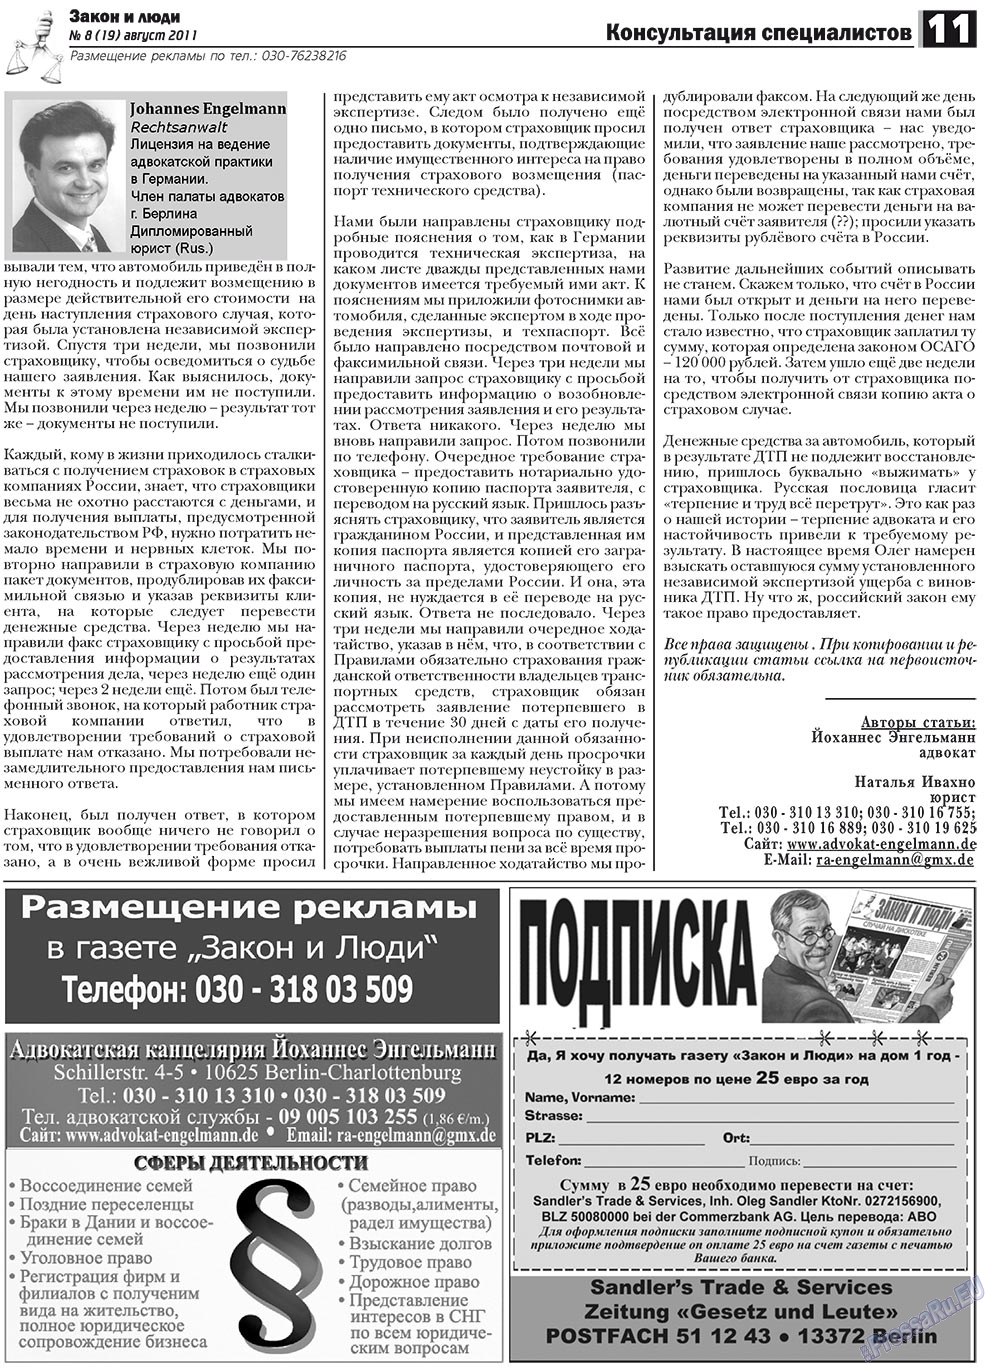 Закон и люди, газета. 2011 №8 стр.11